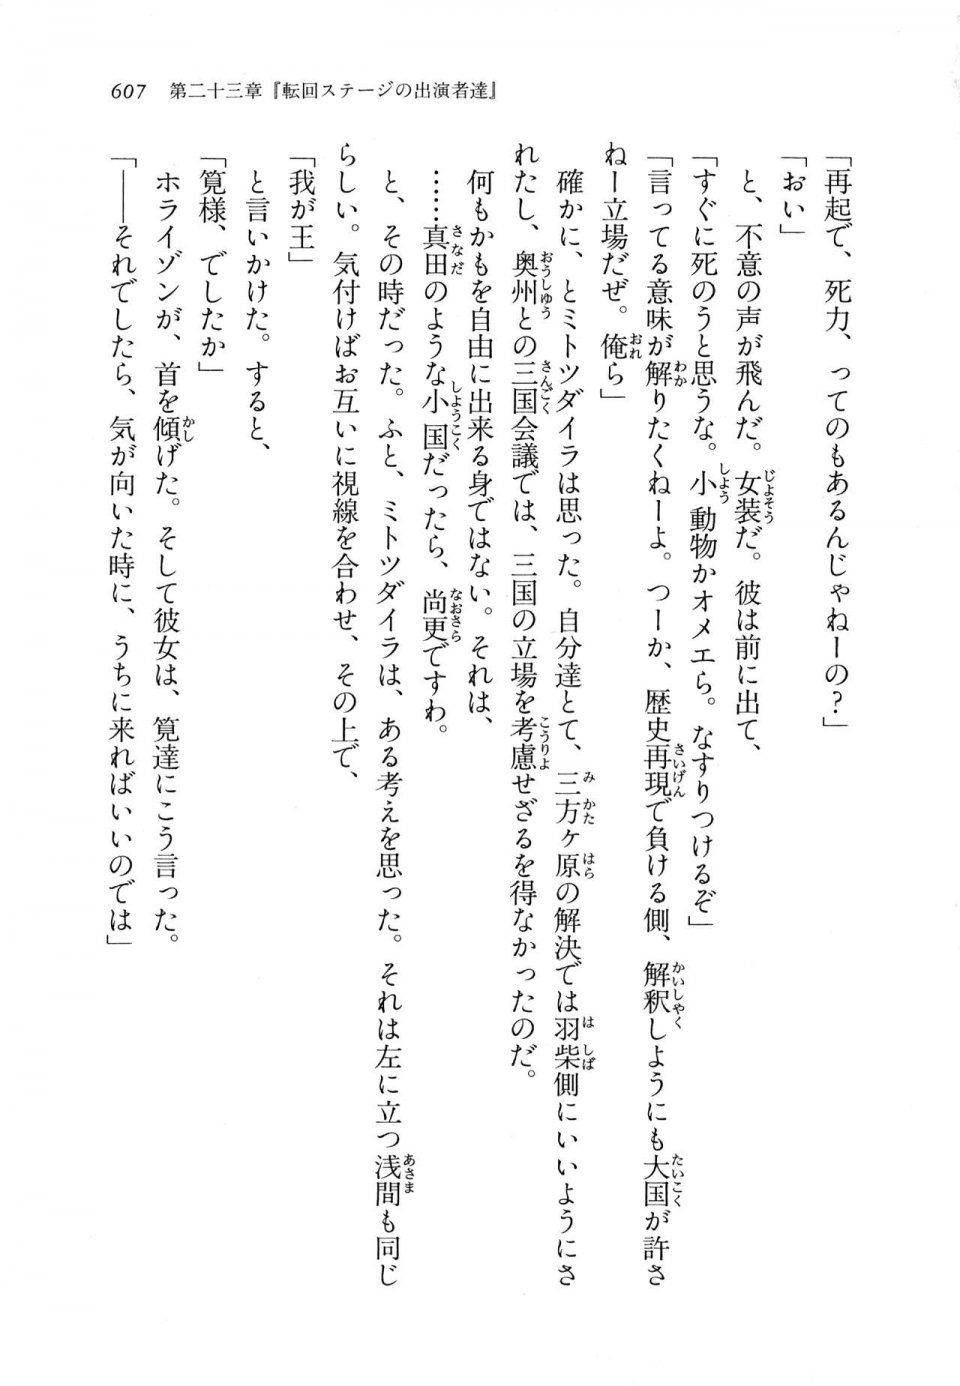 Kyoukai Senjou no Horizon LN Vol 11(5A) - Photo #607